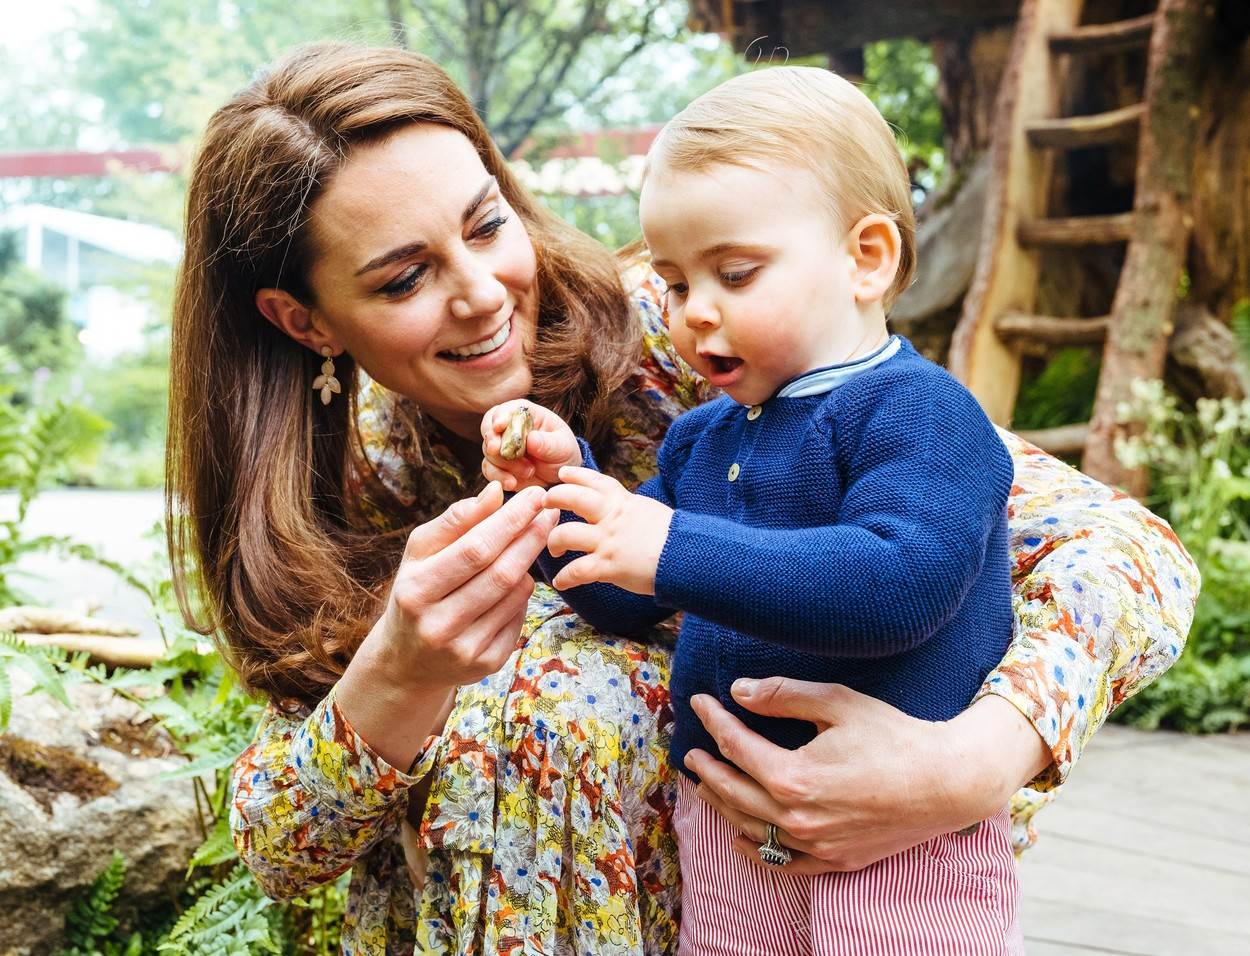 Kate Middleton rodila je svoje treće dijete, princa Louisa u travnju 2018.